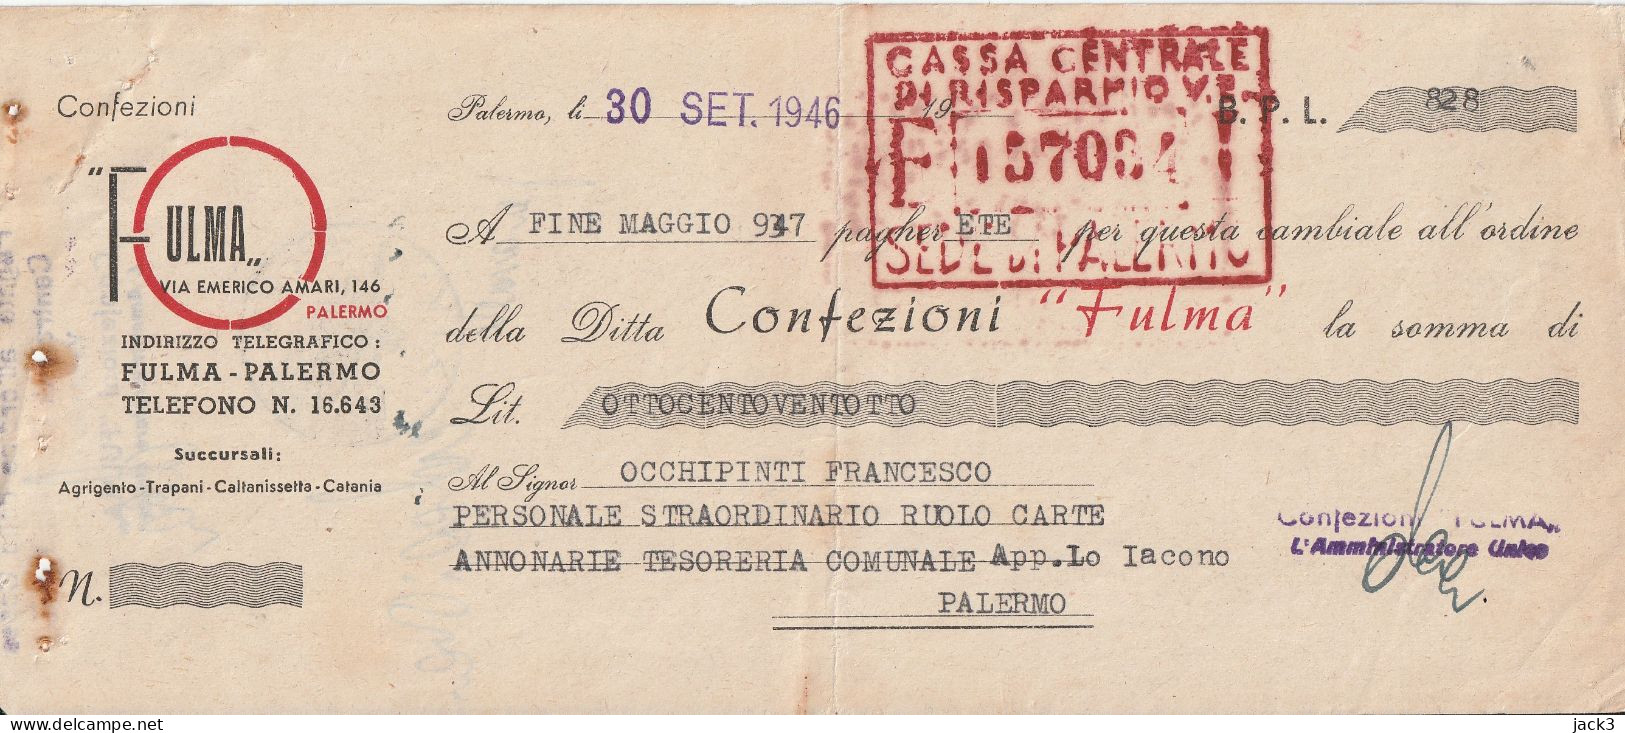 CAMBIALE - BANCO DI SICILIA - CAMBIALE CON TASSELLO PUBBLICITARIO - PALERMO  1946 - Chèques & Chèques De Voyage